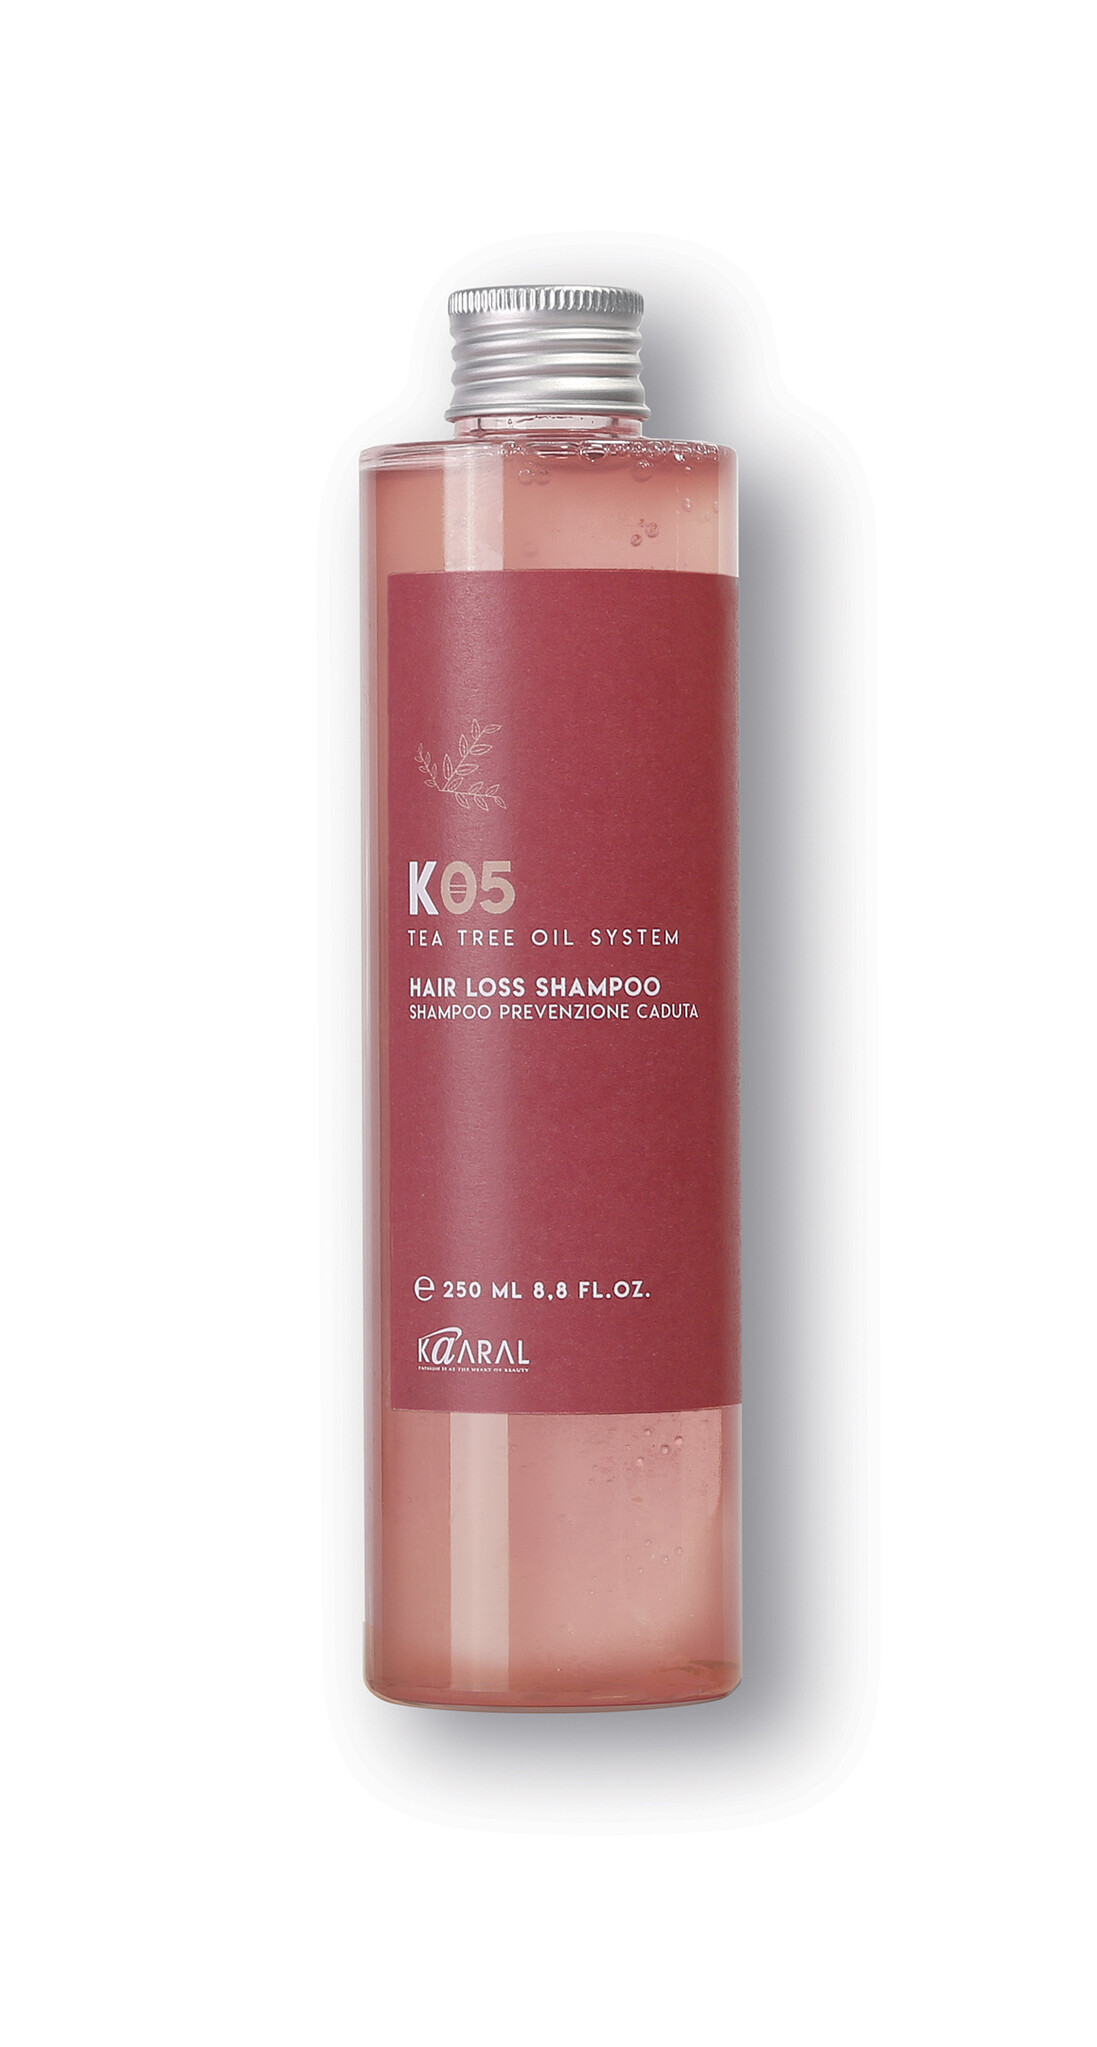 Kaaral K05 anti hair loss shampoo 500ml